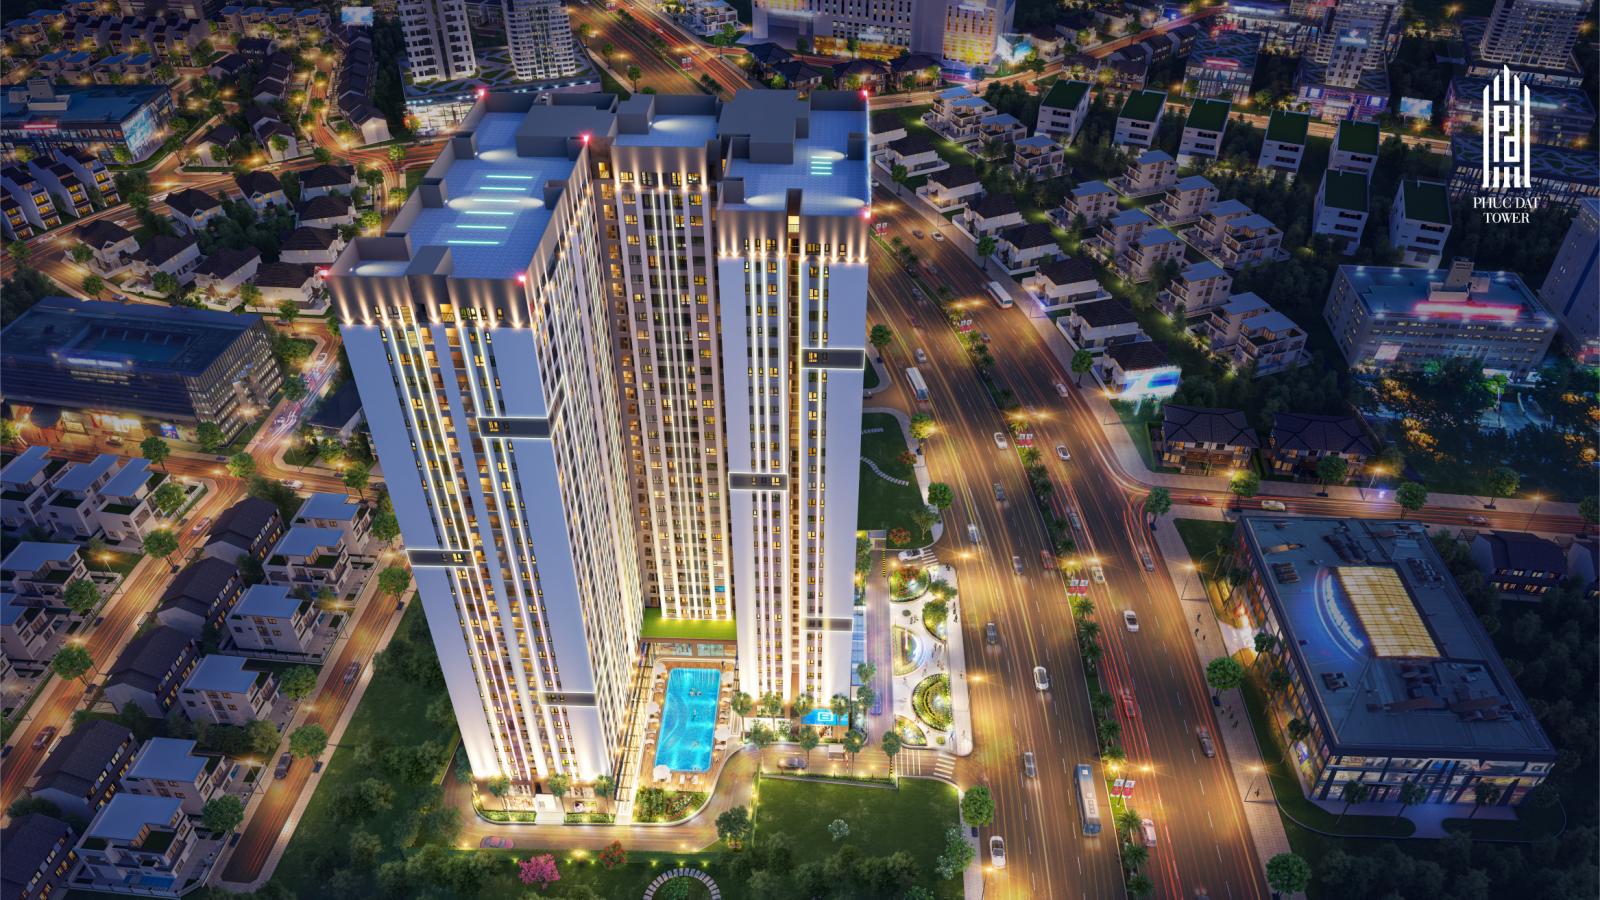 Phối cảnh dự án Phuc Dat Tower tại Dĩ An do Công ty TNHH Sản xuất và Thương mại Phúc Đạt làm chủ đầu tư